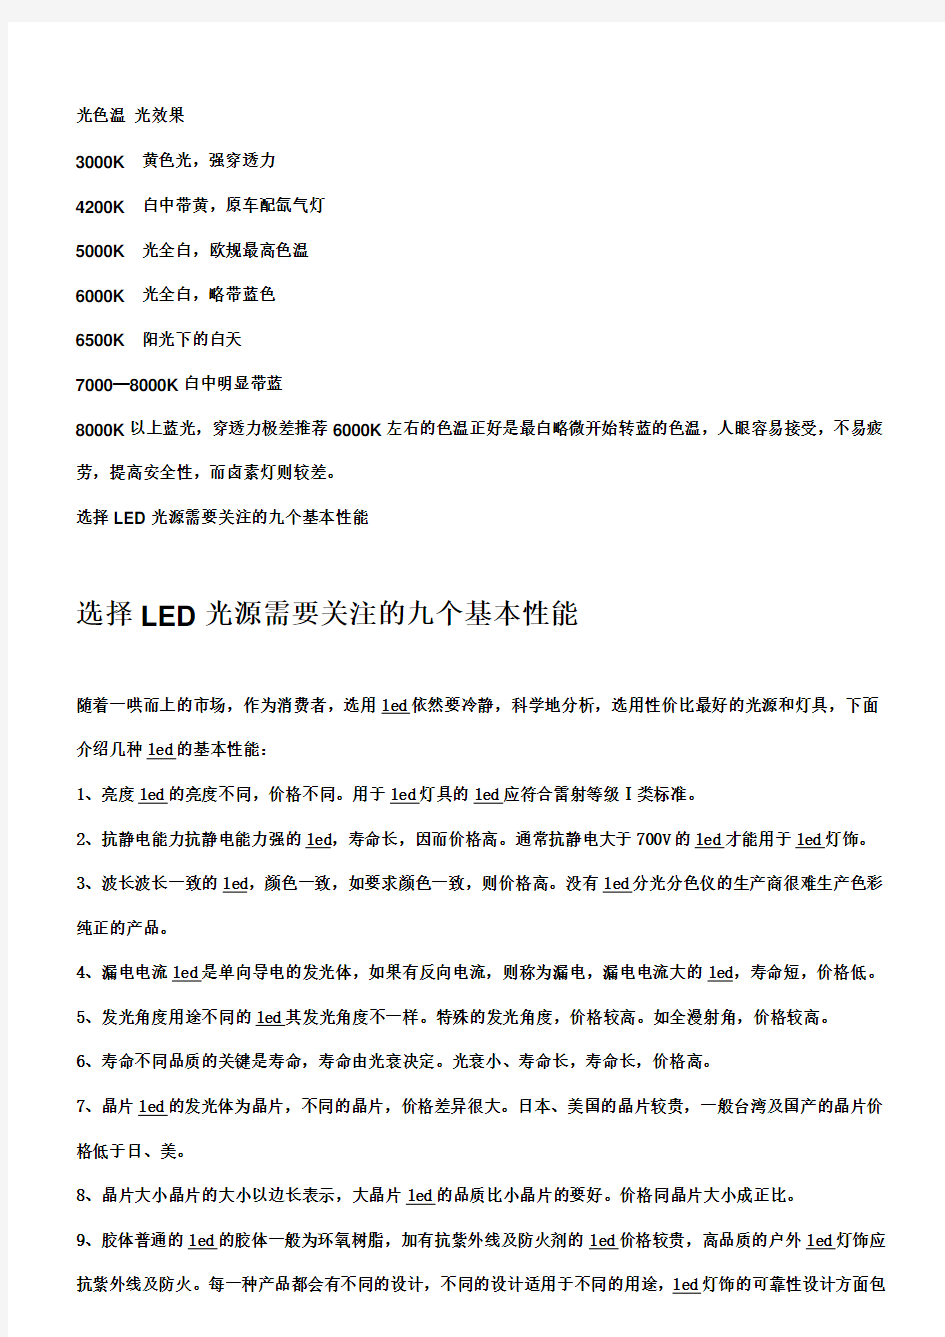 LED行业基础知识